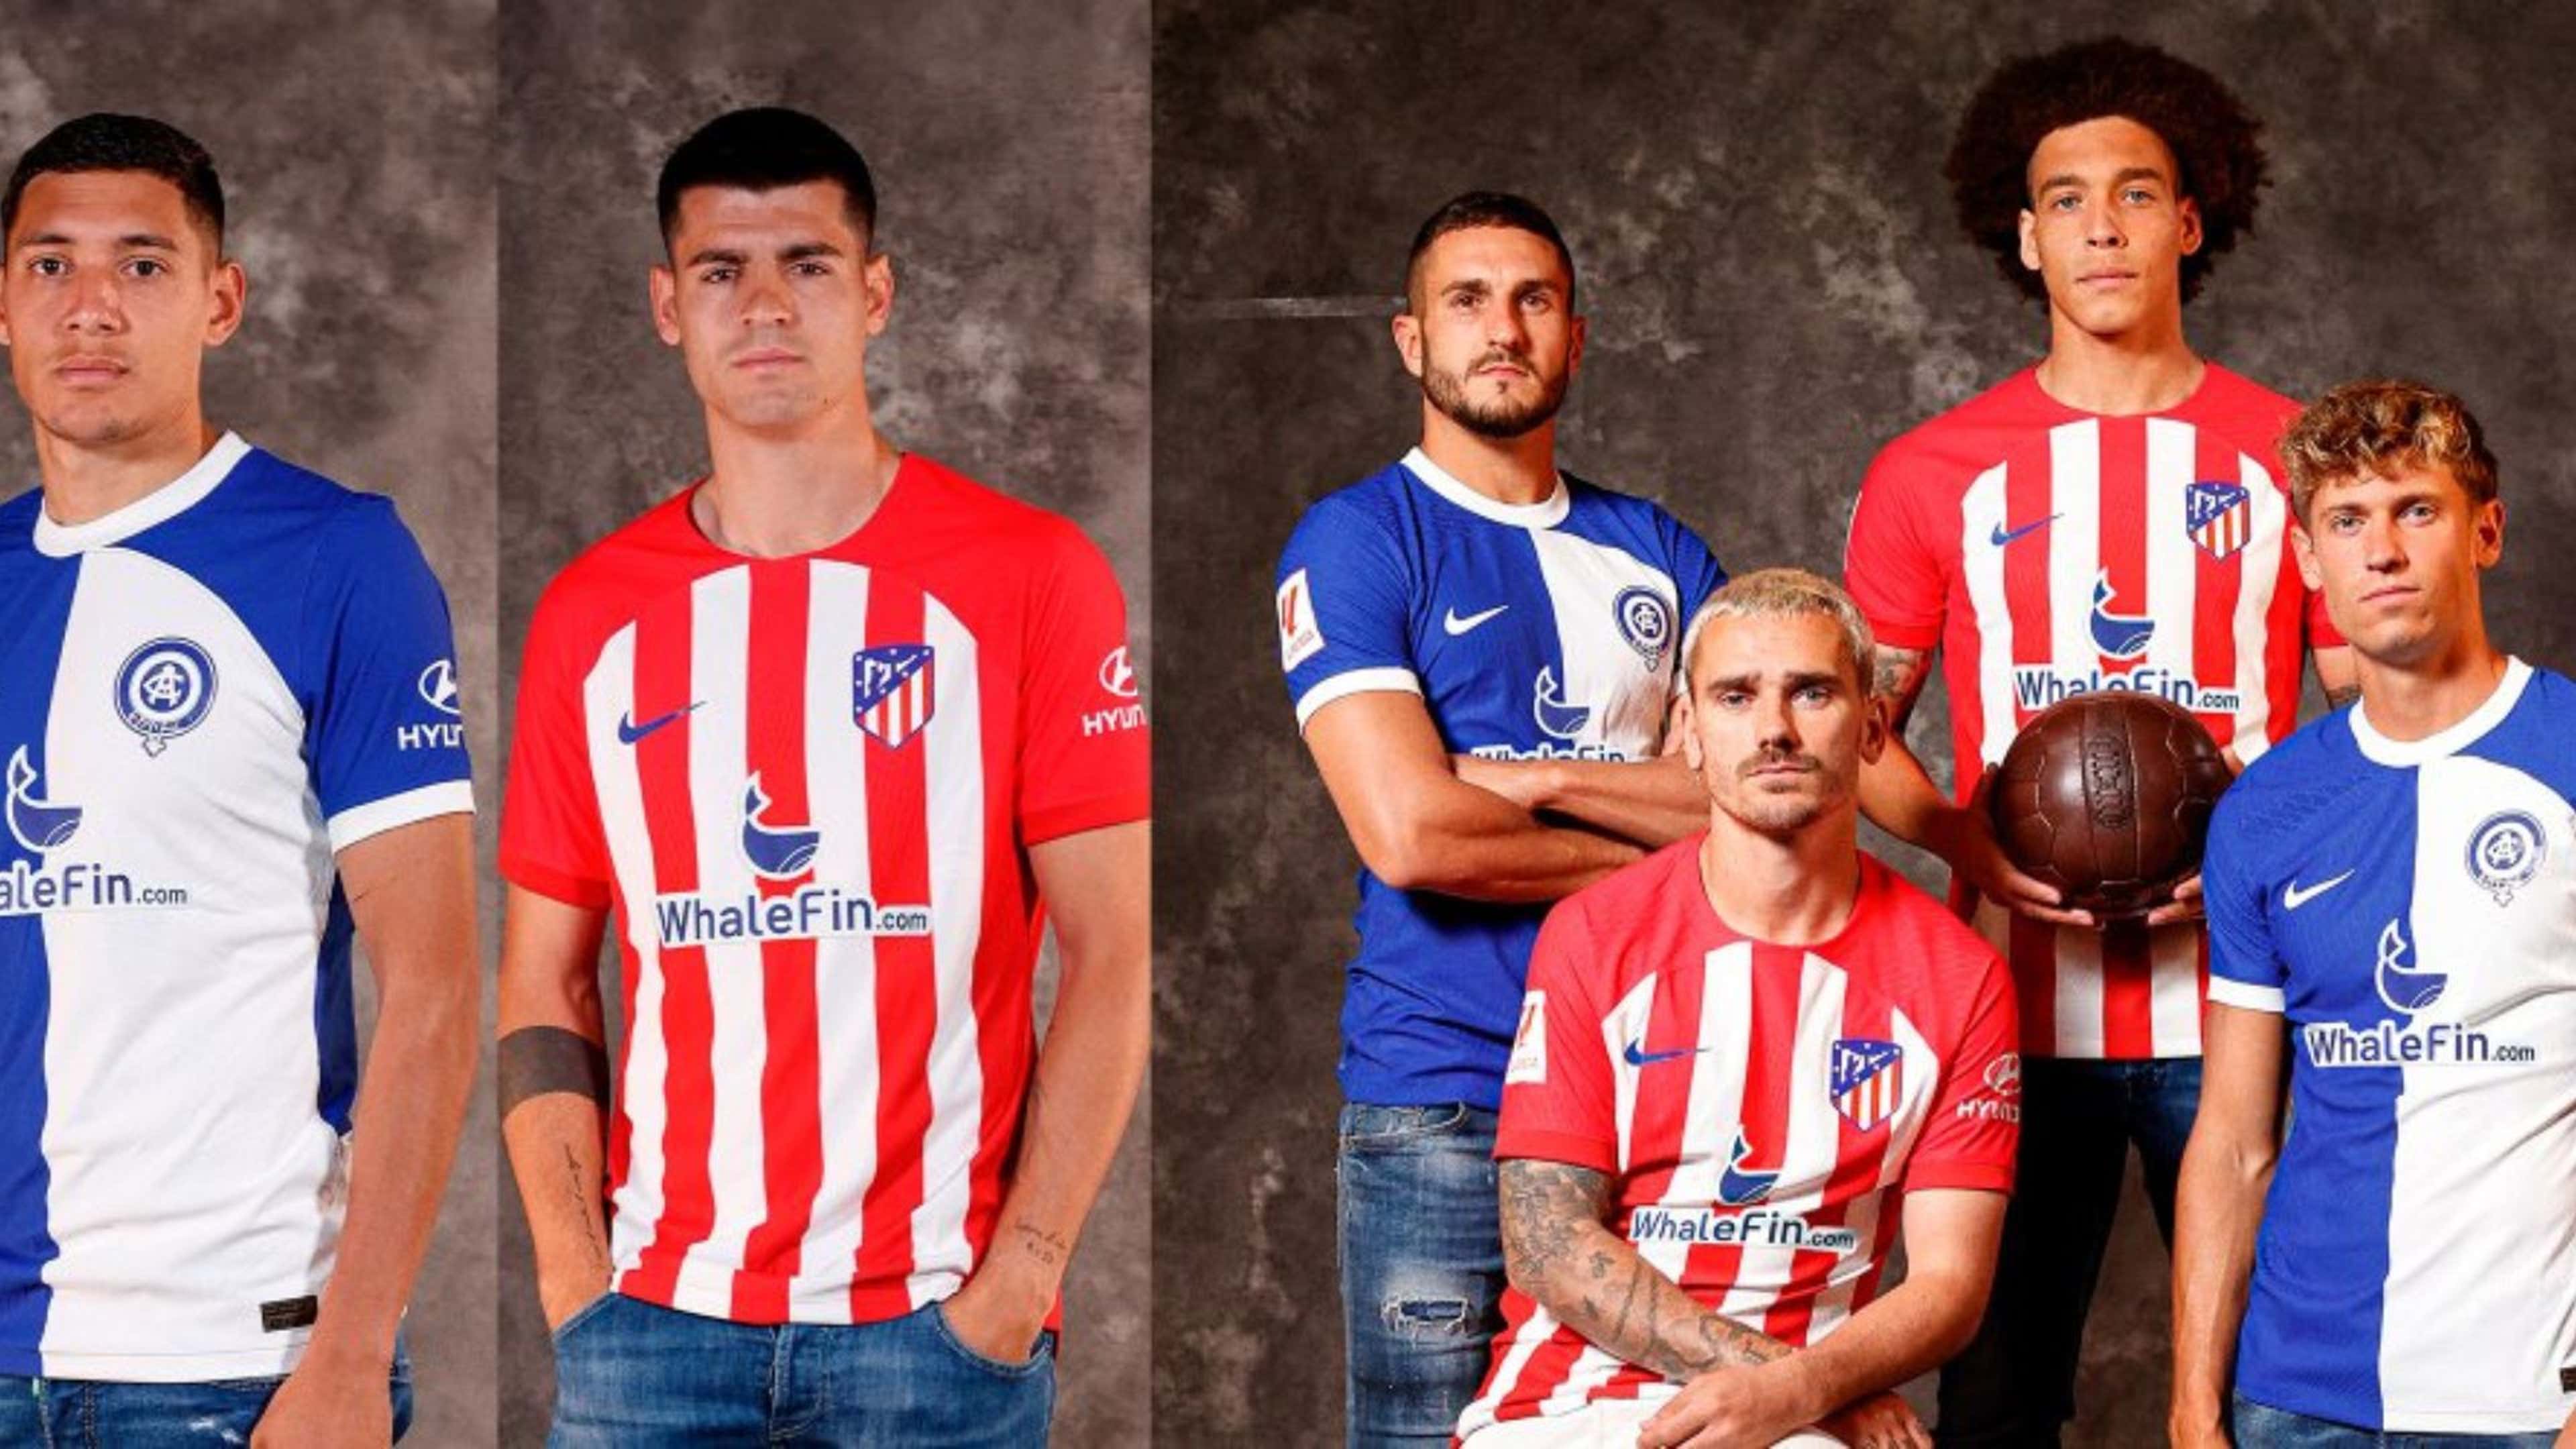 El Atlético de Madrid presentó su camiseta para la temporada 2017